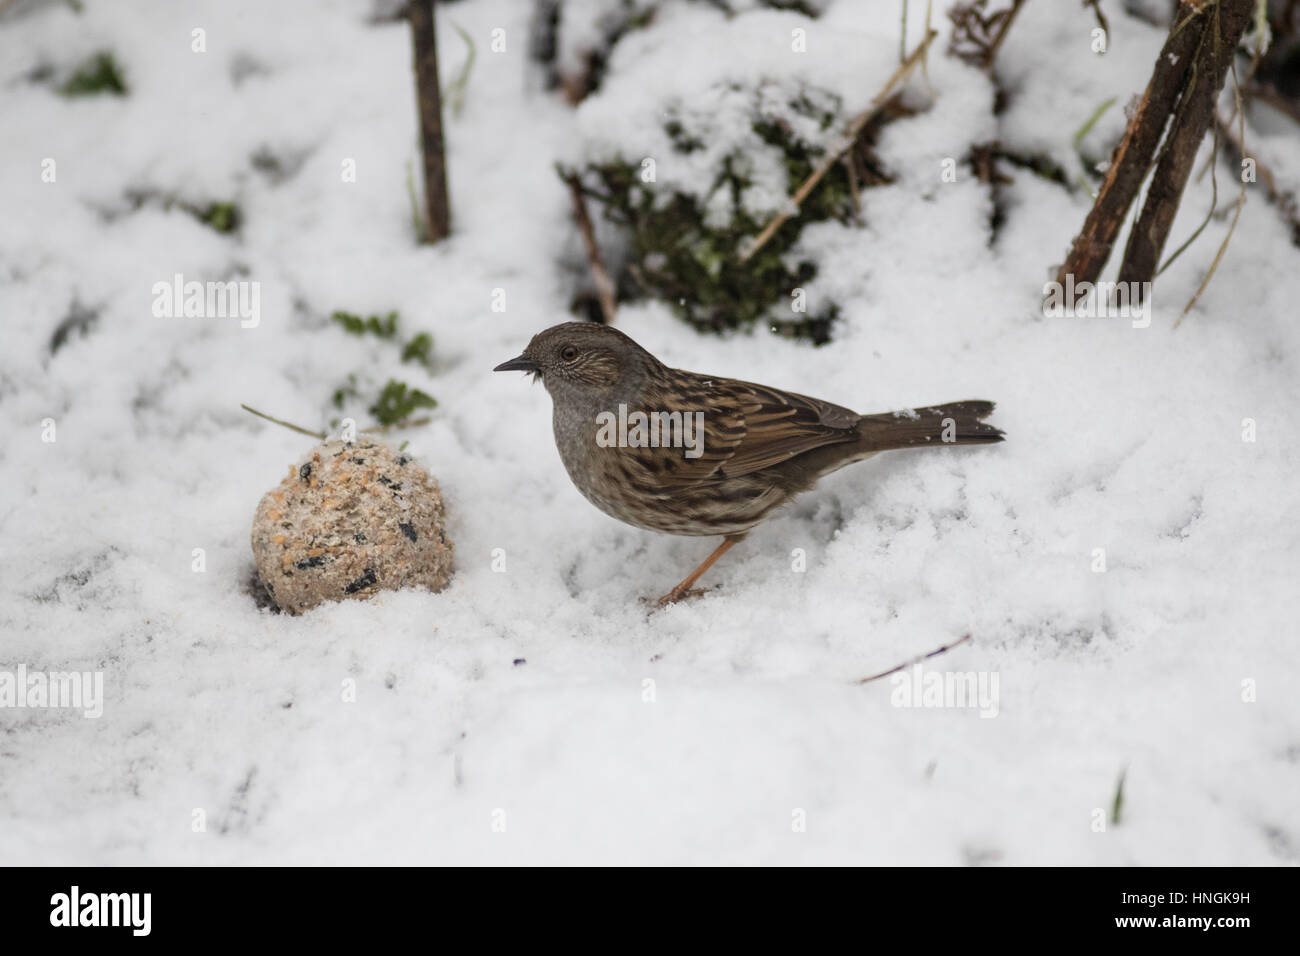 Un nid rss dans un jardin du Yorkshire au cours d'une période d'hiver Banque D'Images